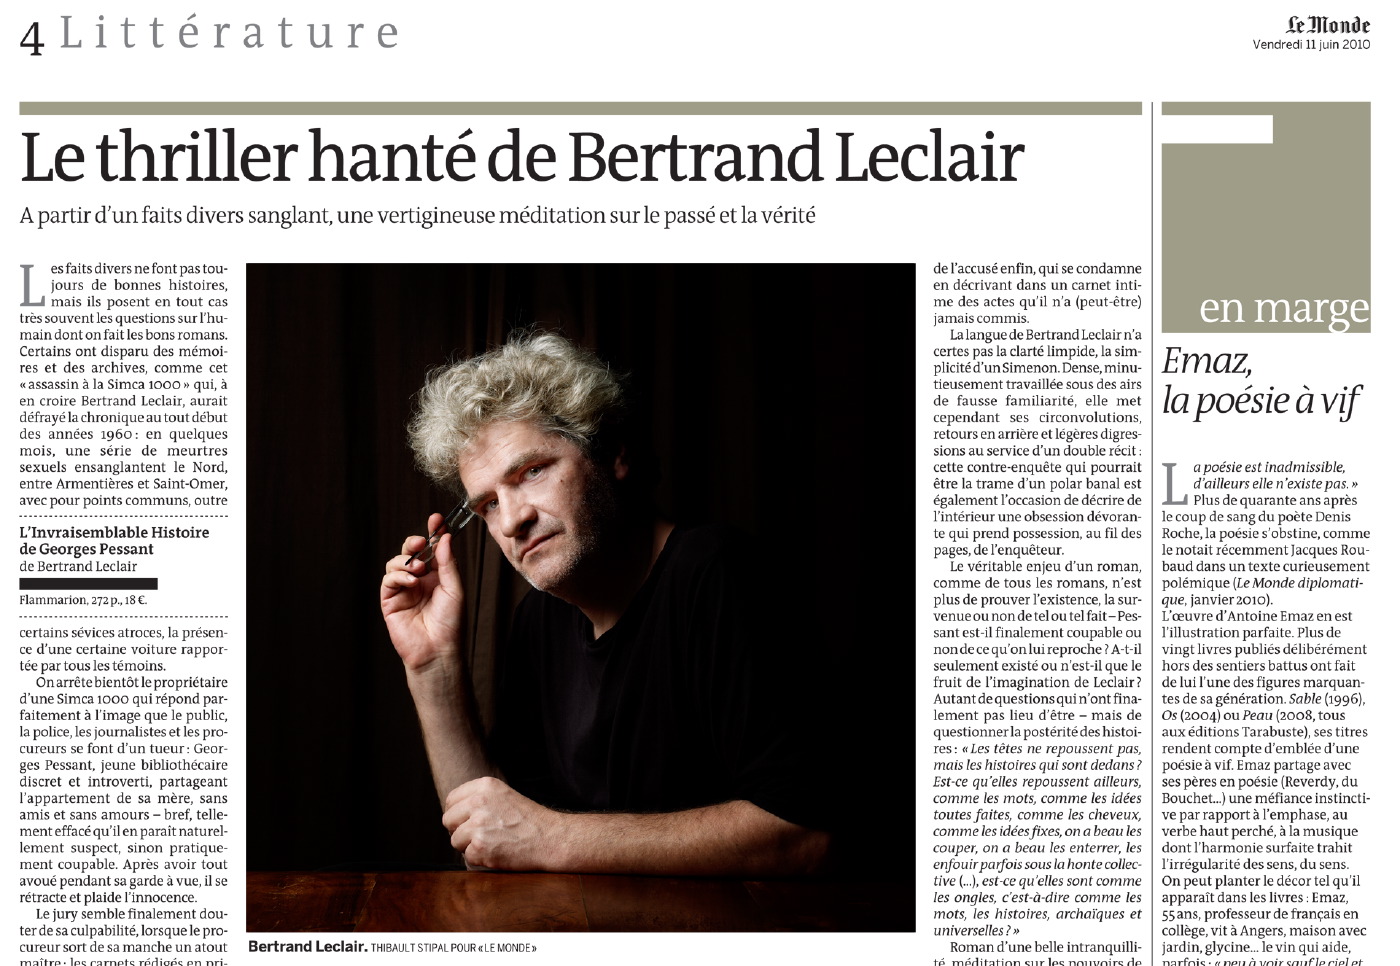 Thibault Stipal - Photographe - Bertrand Leclair / Le Monde - 1